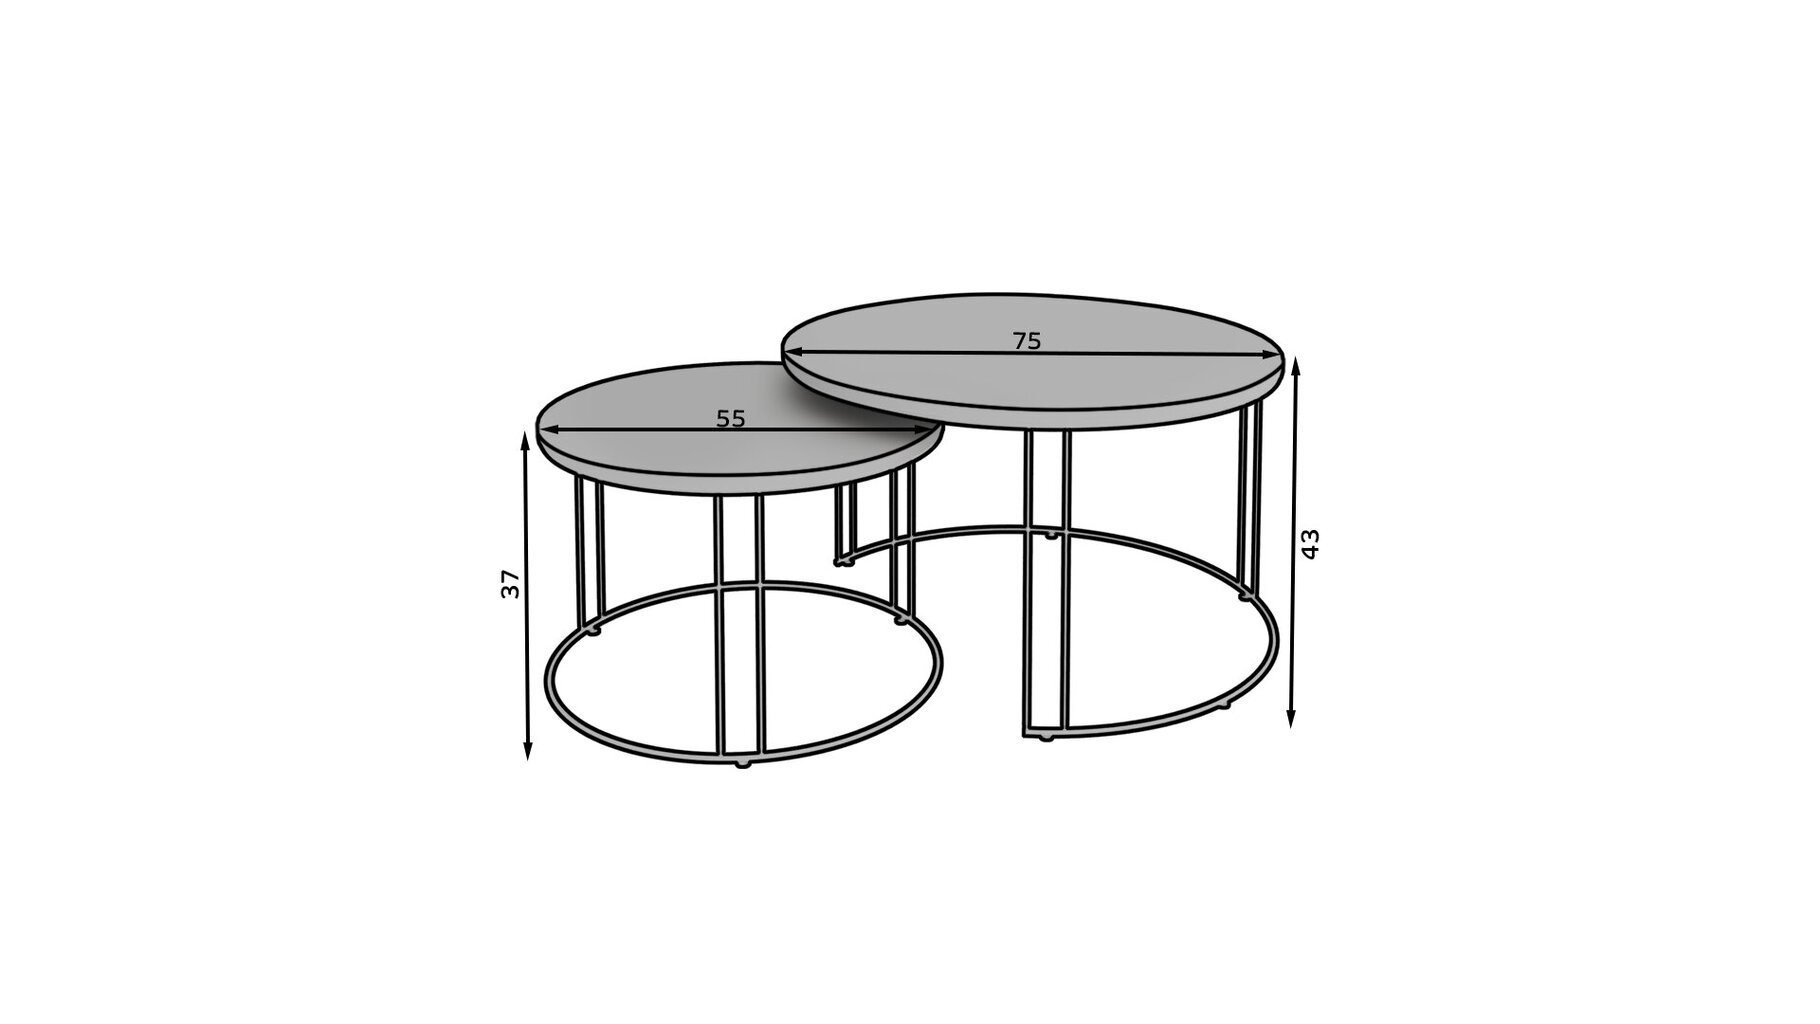 Kavos staliukų komplektas ADRK Furniture Etta, juodas/baltas kaina ir informacija | Kavos staliukai | pigu.lt